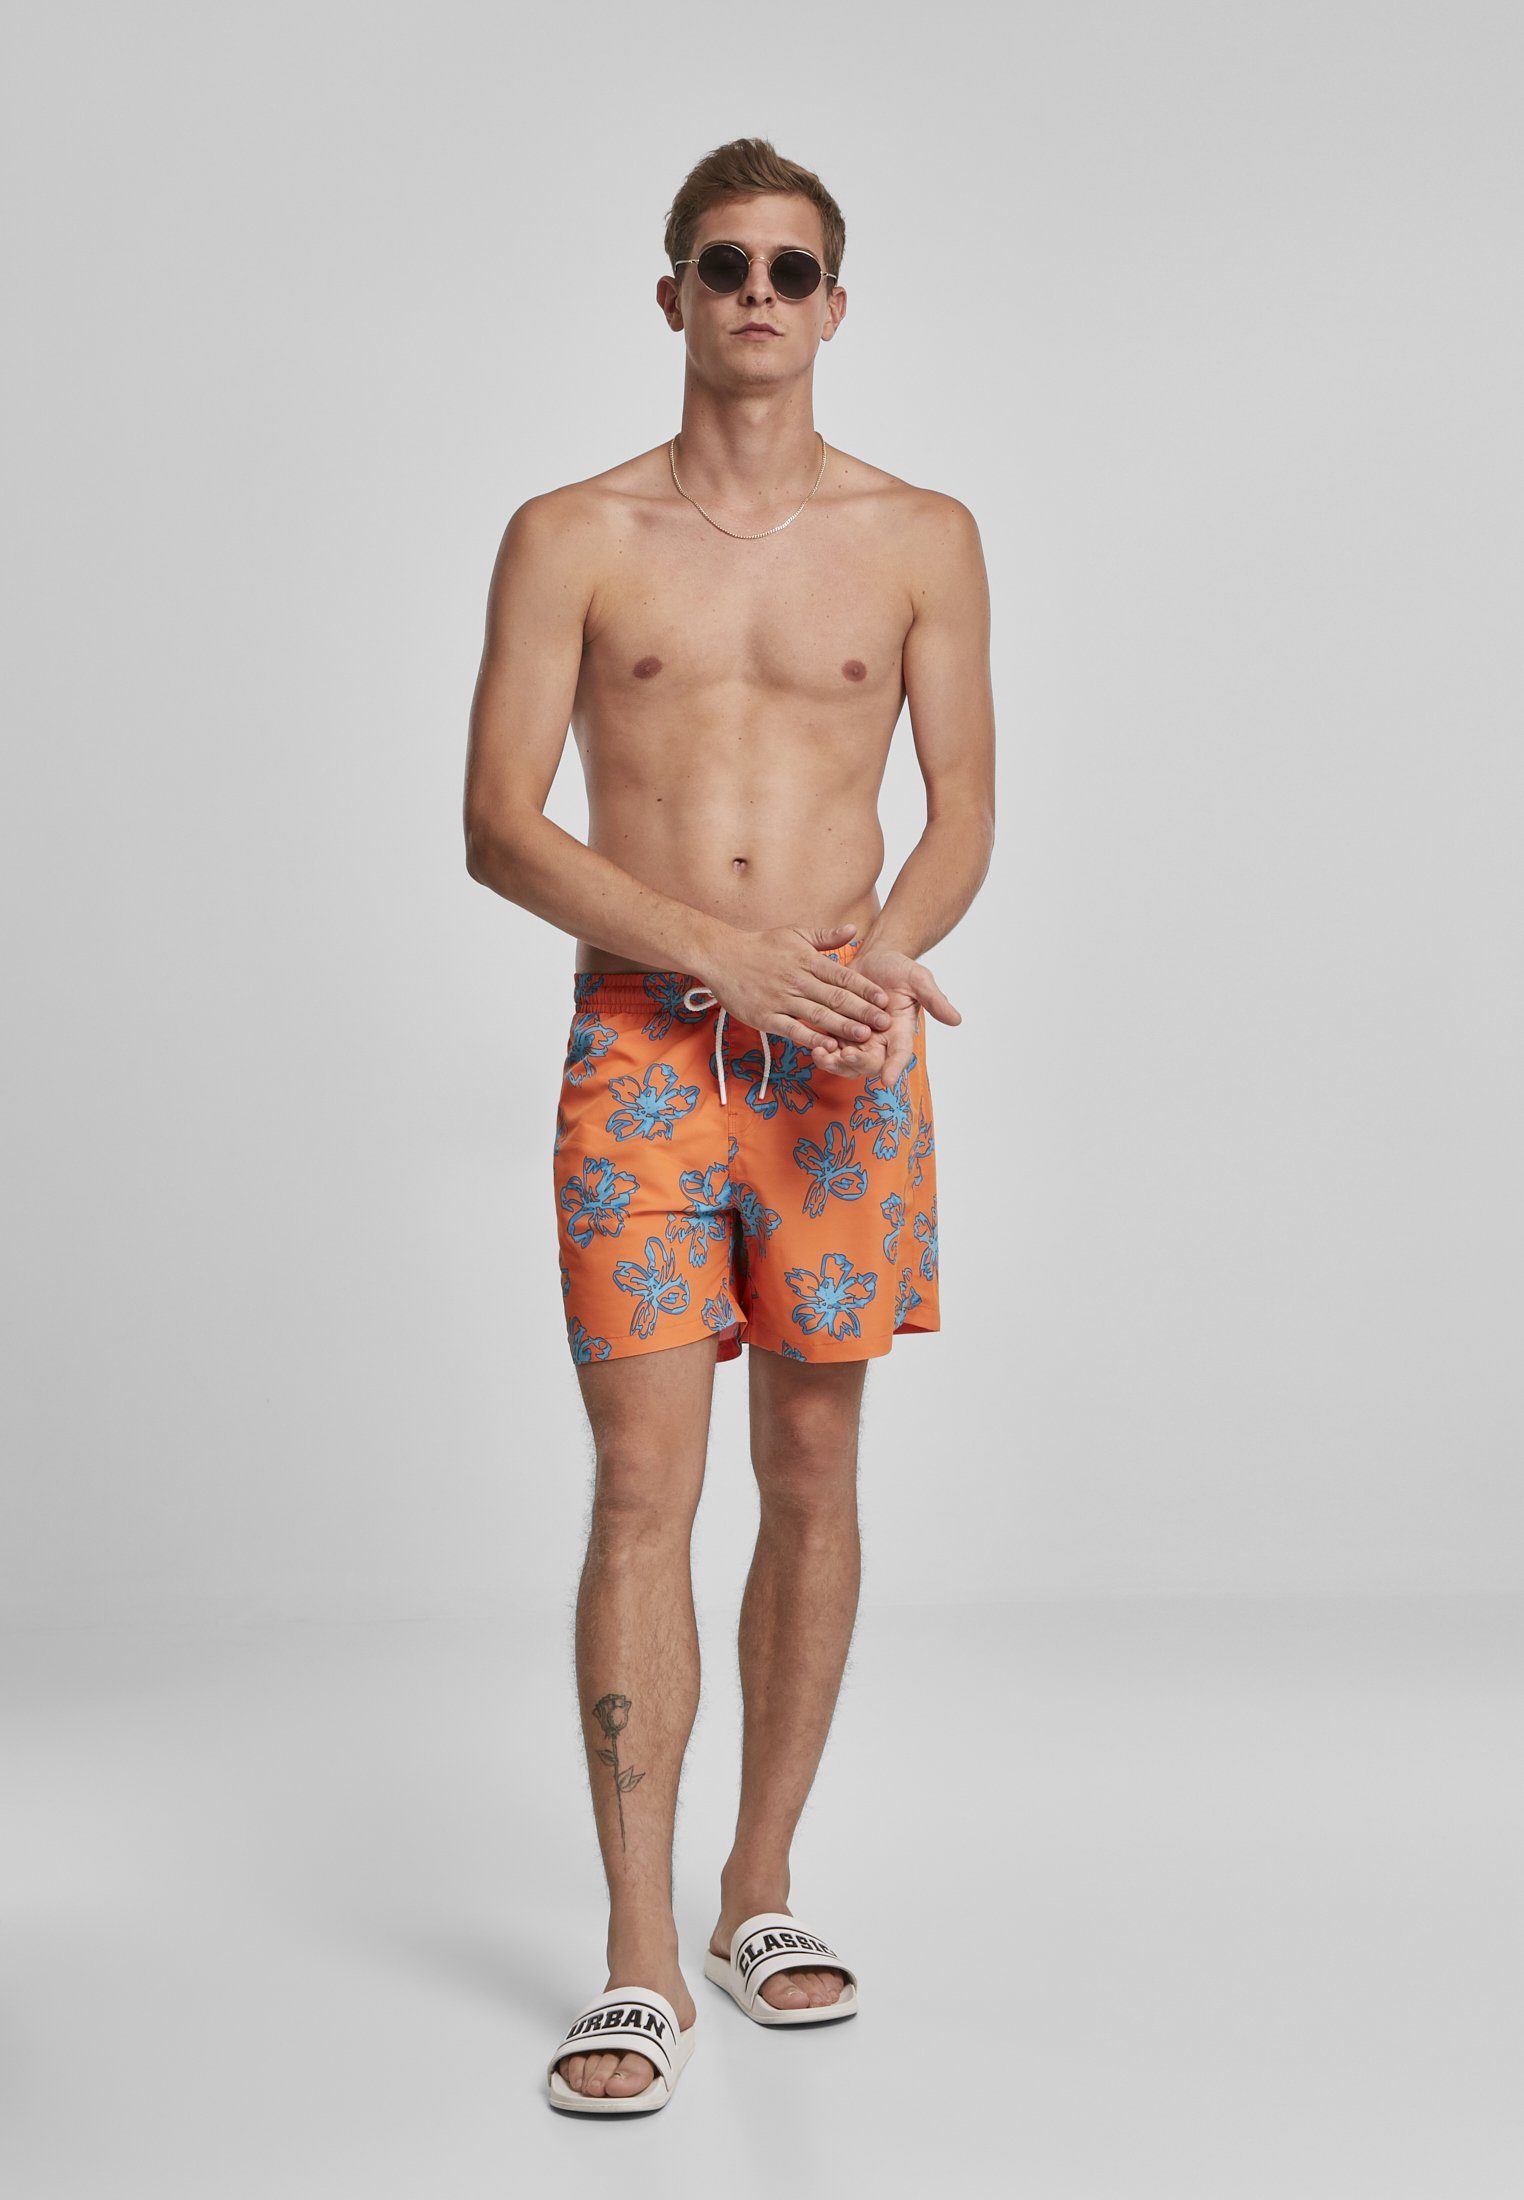 Badeshorts Floral Shorts Swim Herren orange CLASSICS URBAN